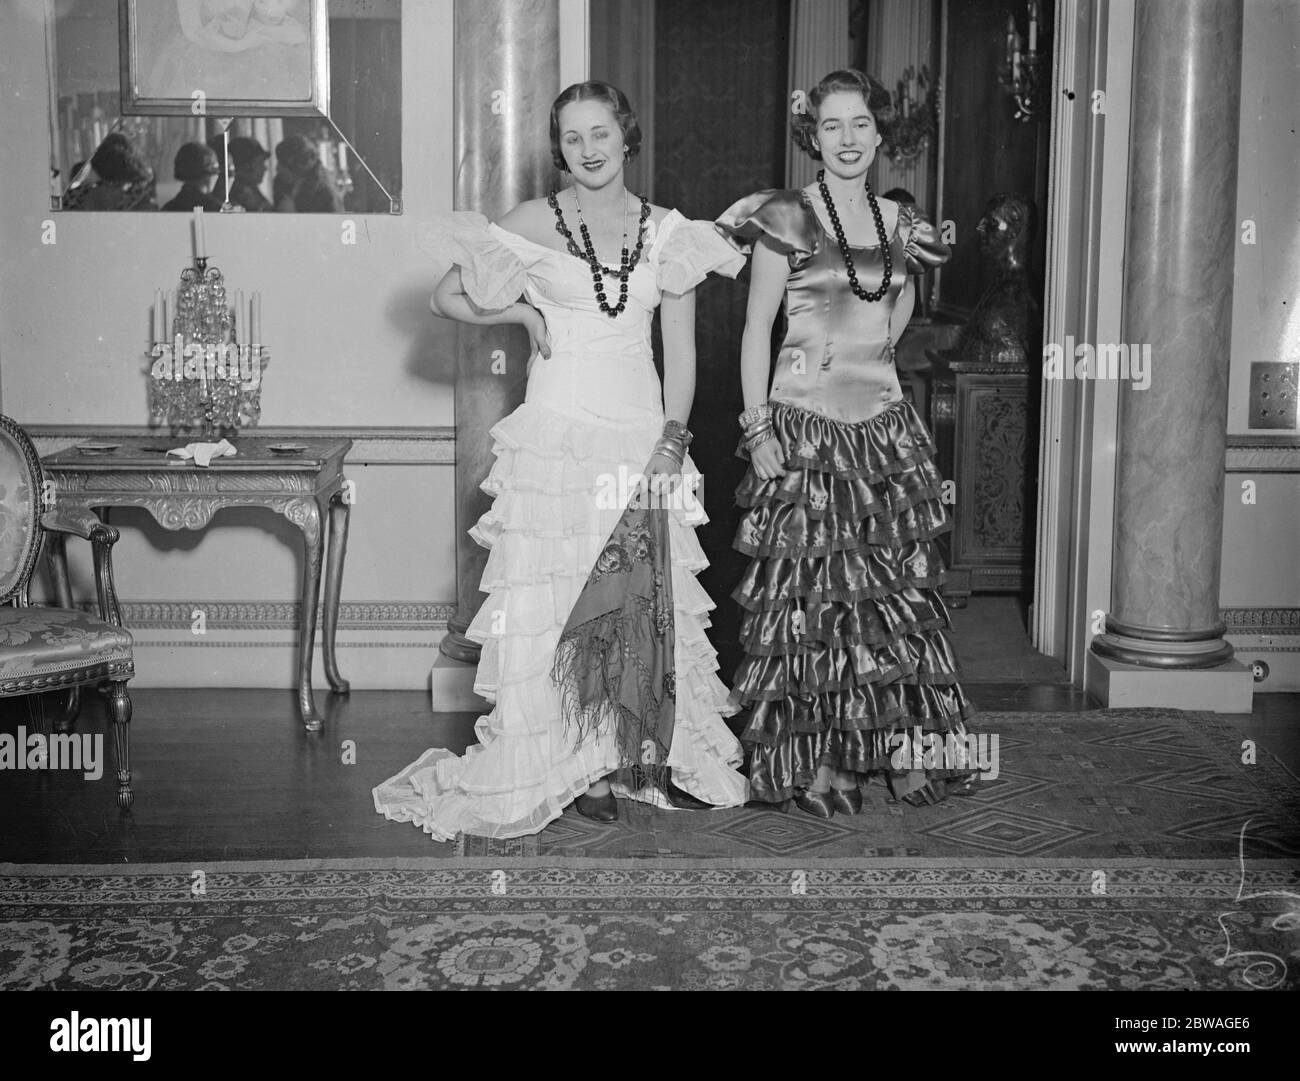 Aux répétitions pour la bal de la nuit espagnole , qui se tiendra à la Maison Grosvenor , Lady Pamela Smith , à gauche , dans sa jolie robe blanche, andalouse et l'honorable Sheila Berry dans sa robe rouge andalouse . Banque D'Images